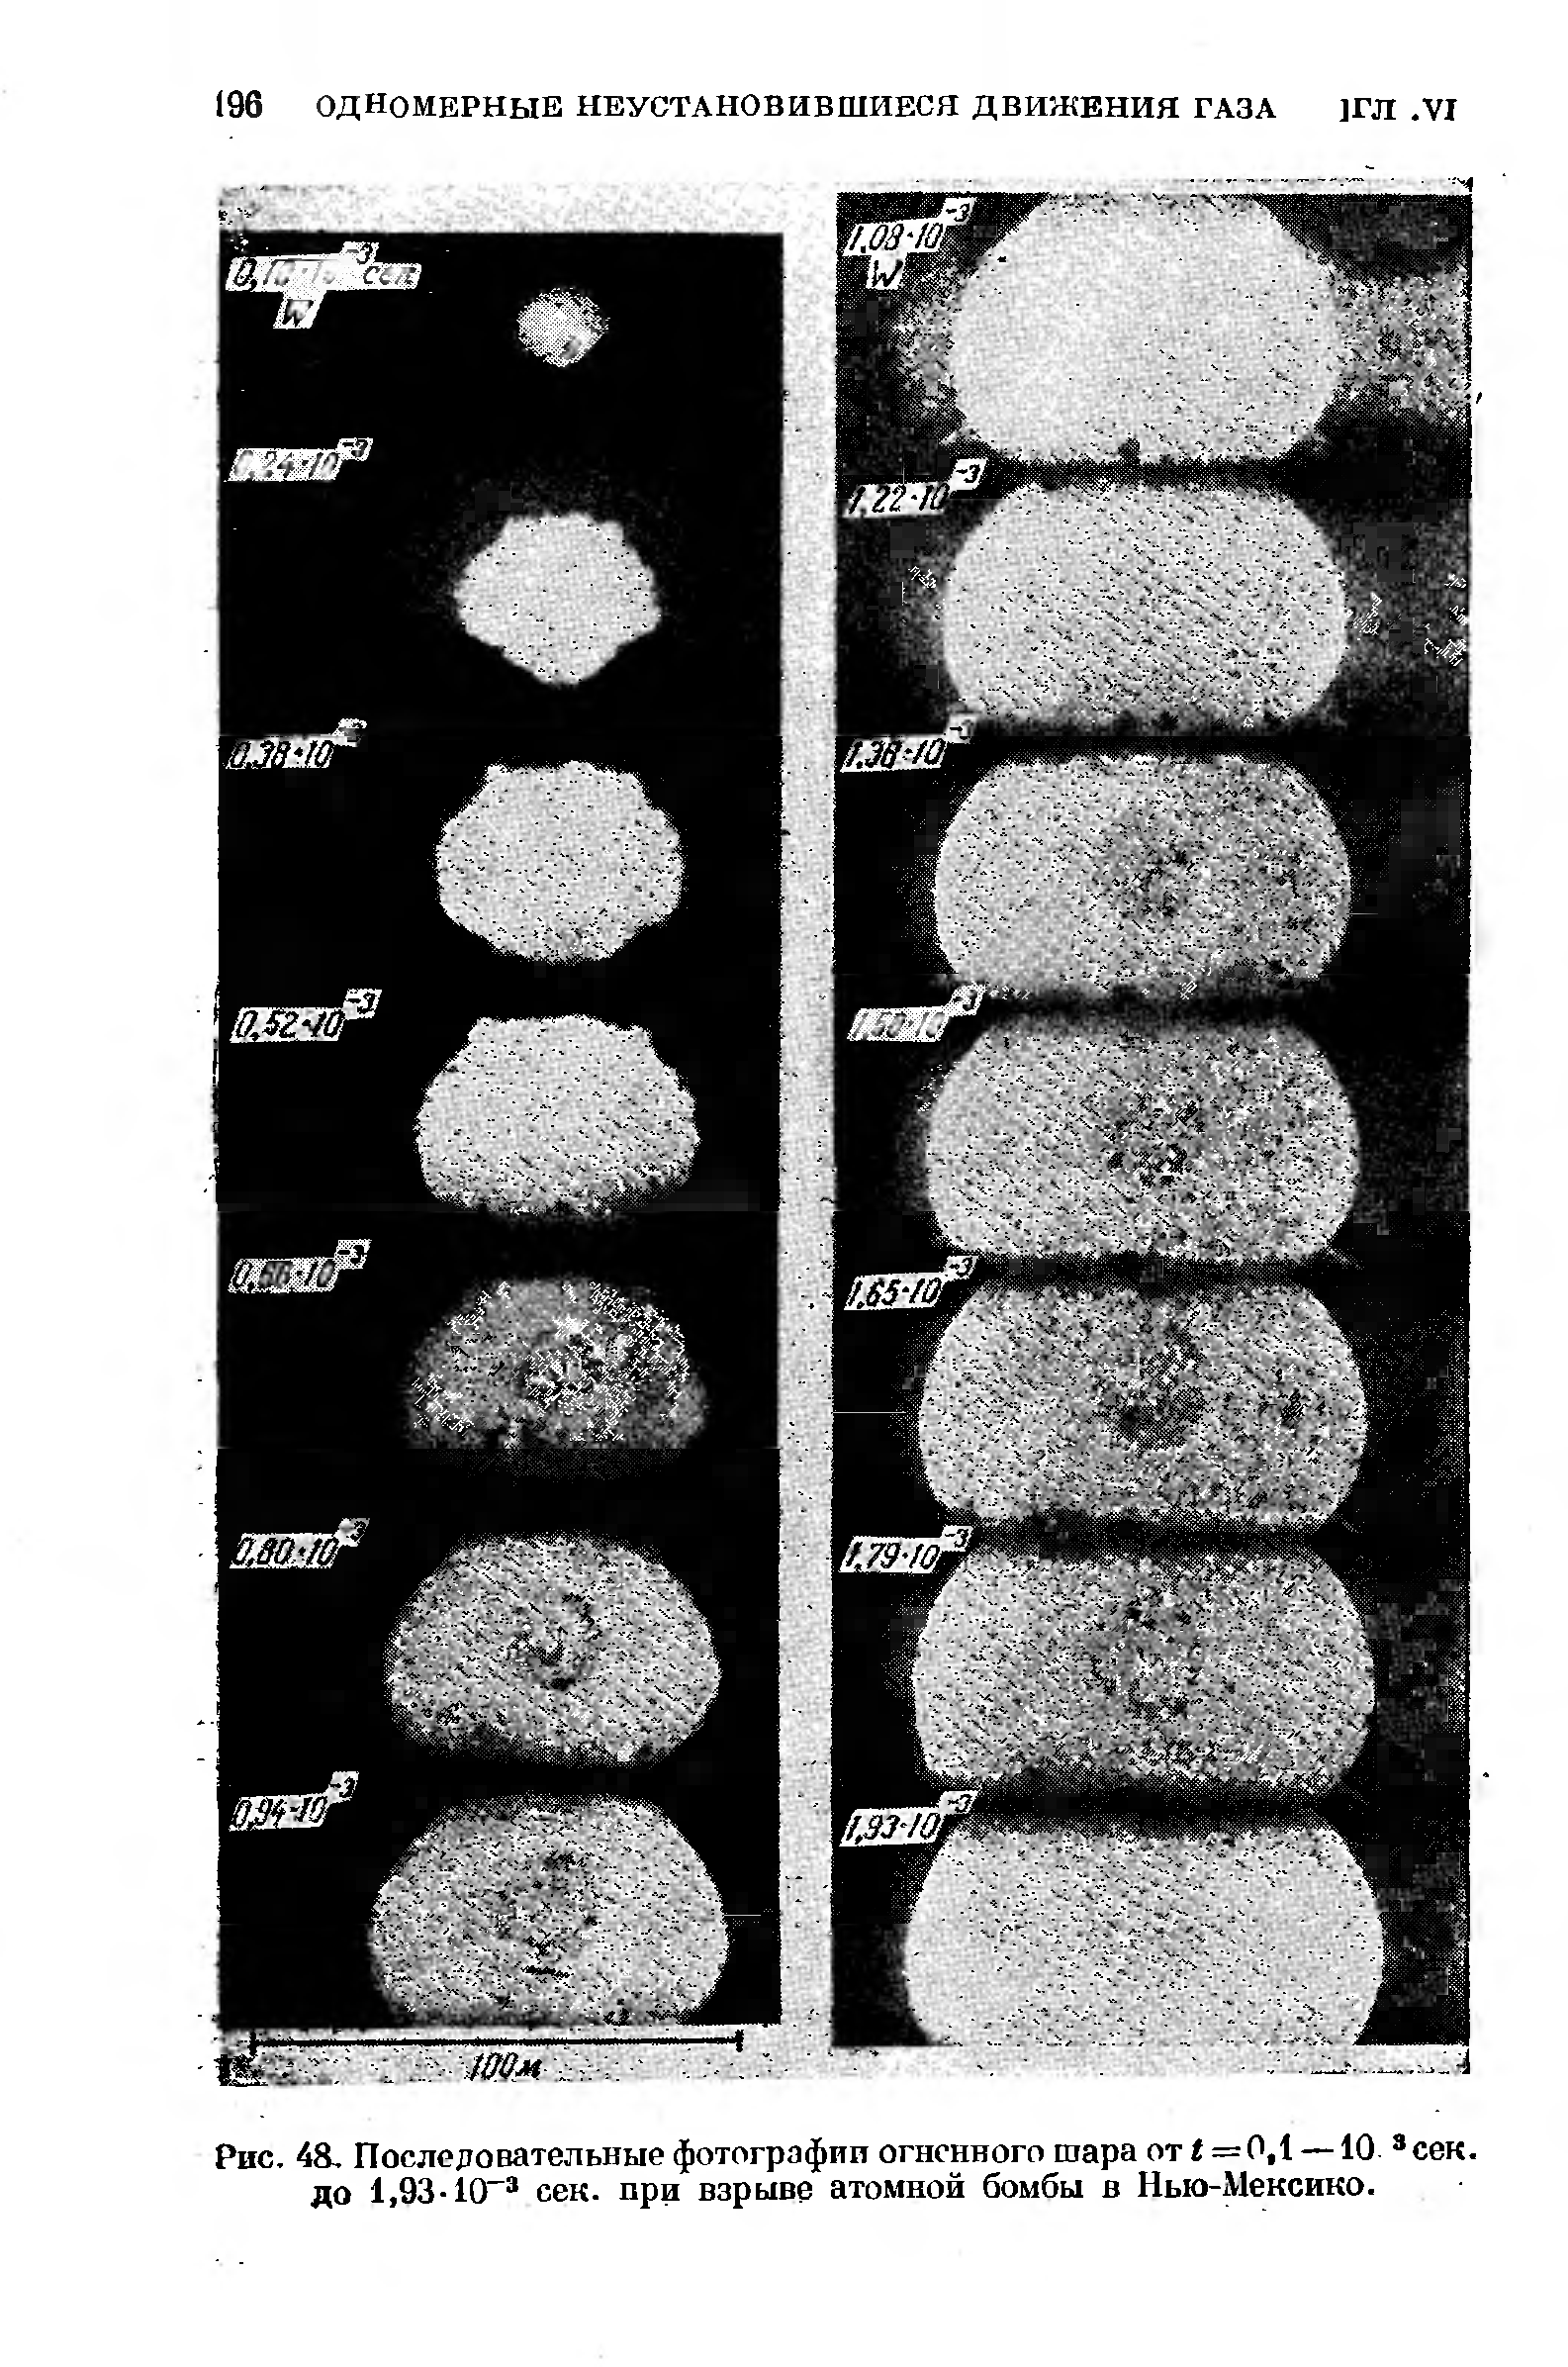 Рис. 48, Последовательные фотографии огненного шара от < = 0,1 —10 сек. до 1,93-10 сек. при взрыве атомной бомбы в Нью-Мексико.
